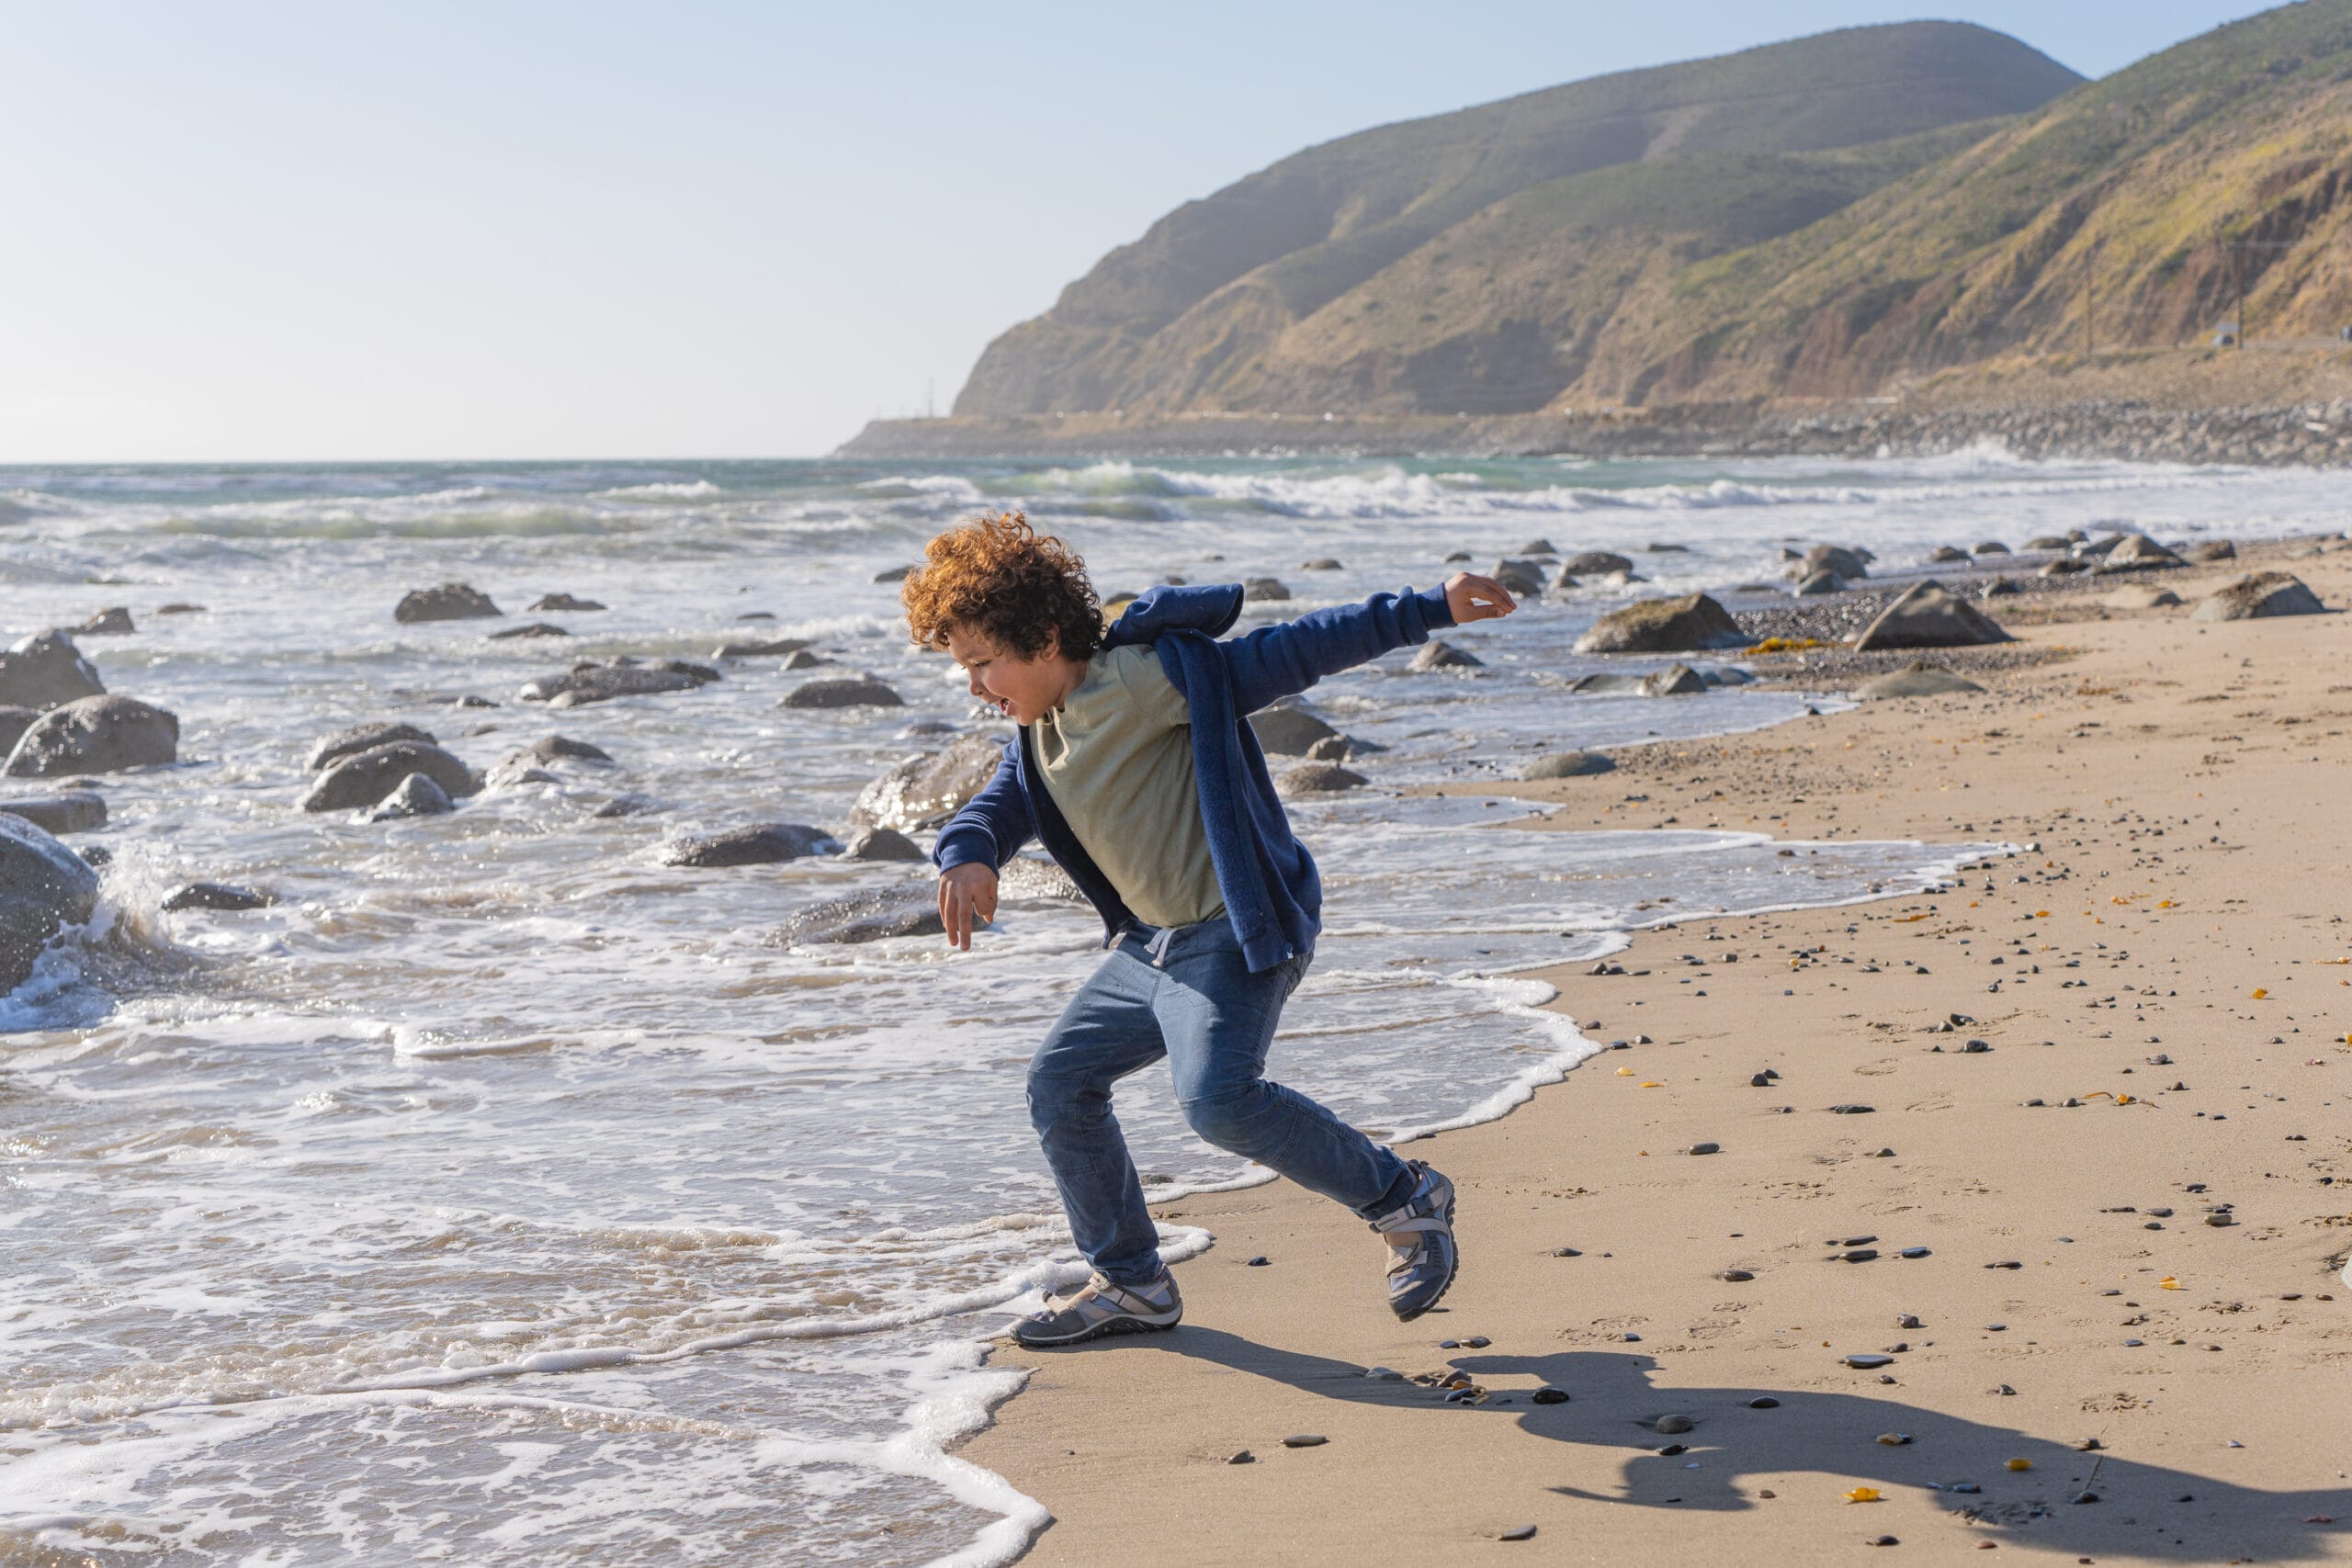 A boy is running on a beach.